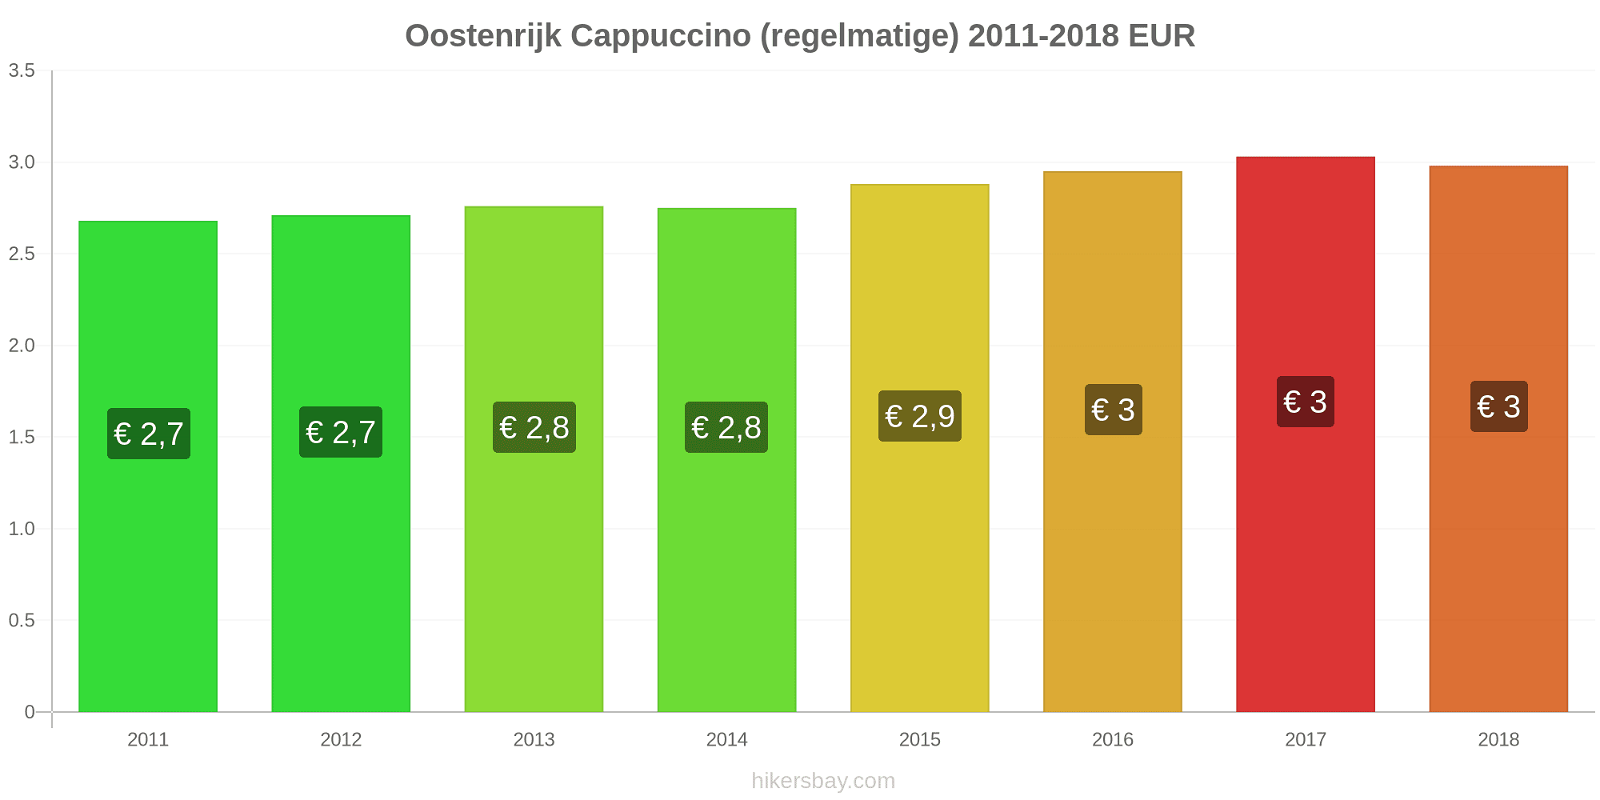 Oostenrijk prijswijzigingen Cappuccino (regulier) hikersbay.com